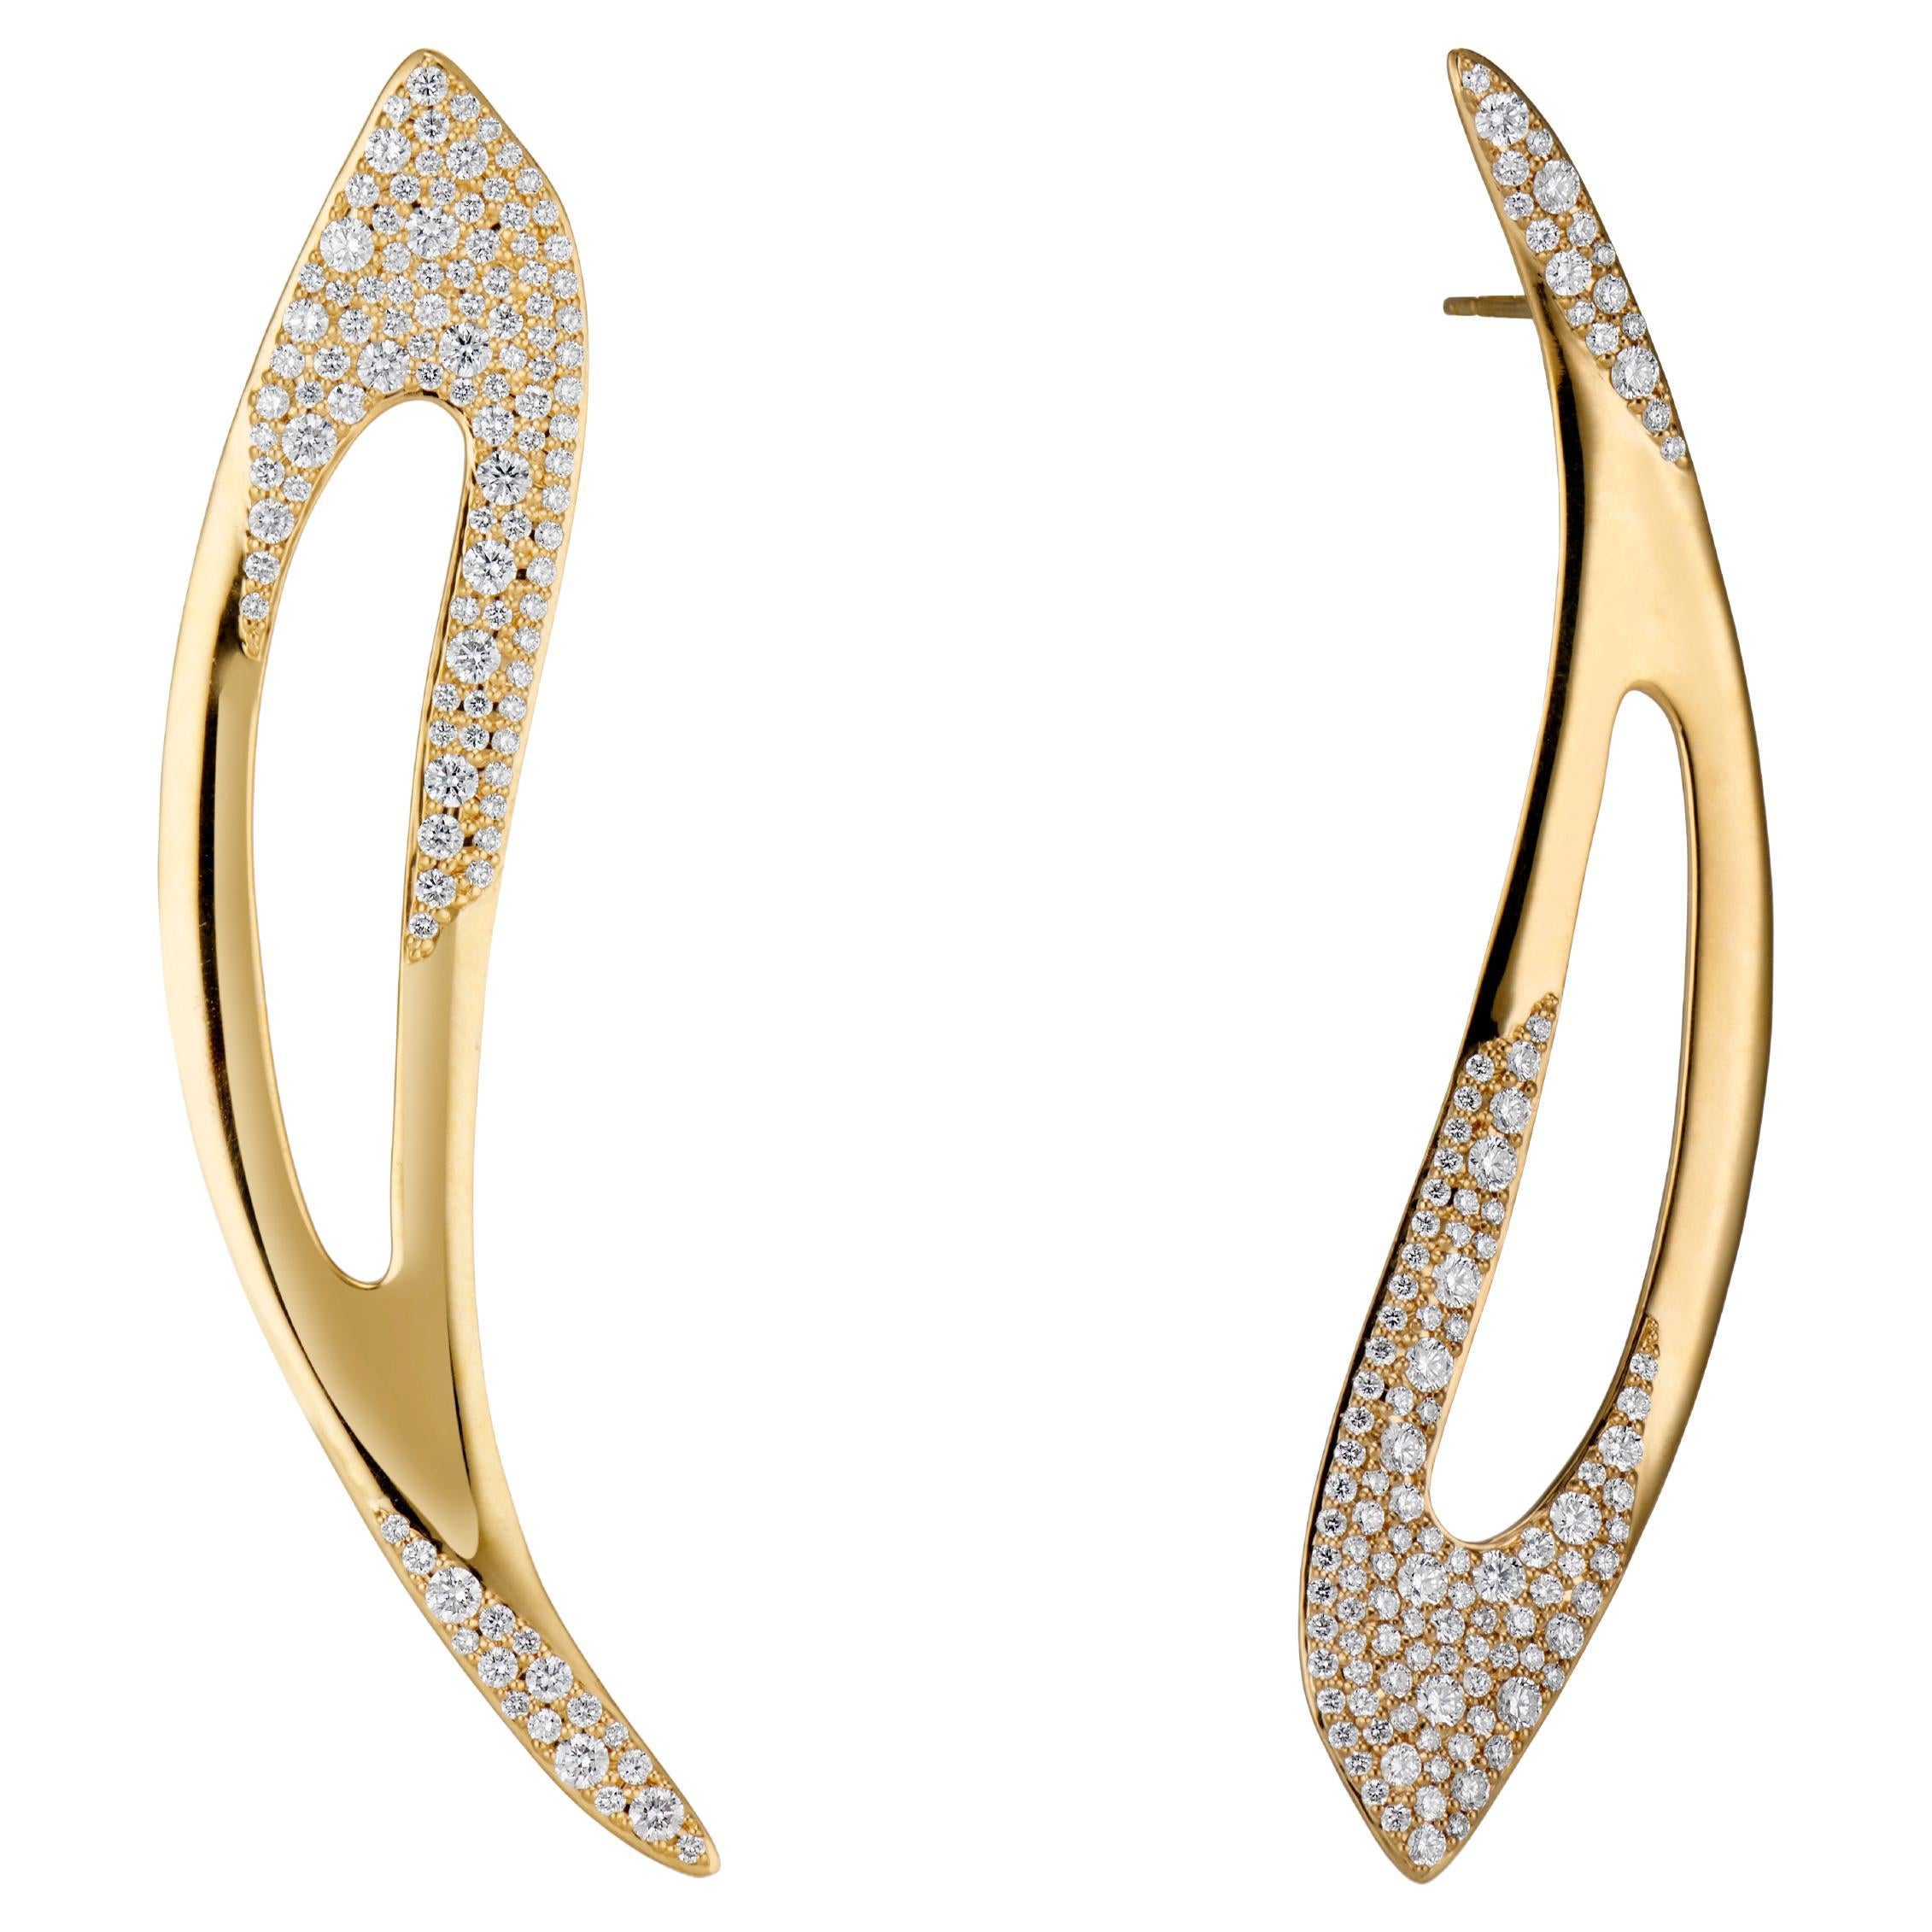 JV Insardi Statement White Diamond 18kt Gold Earrings